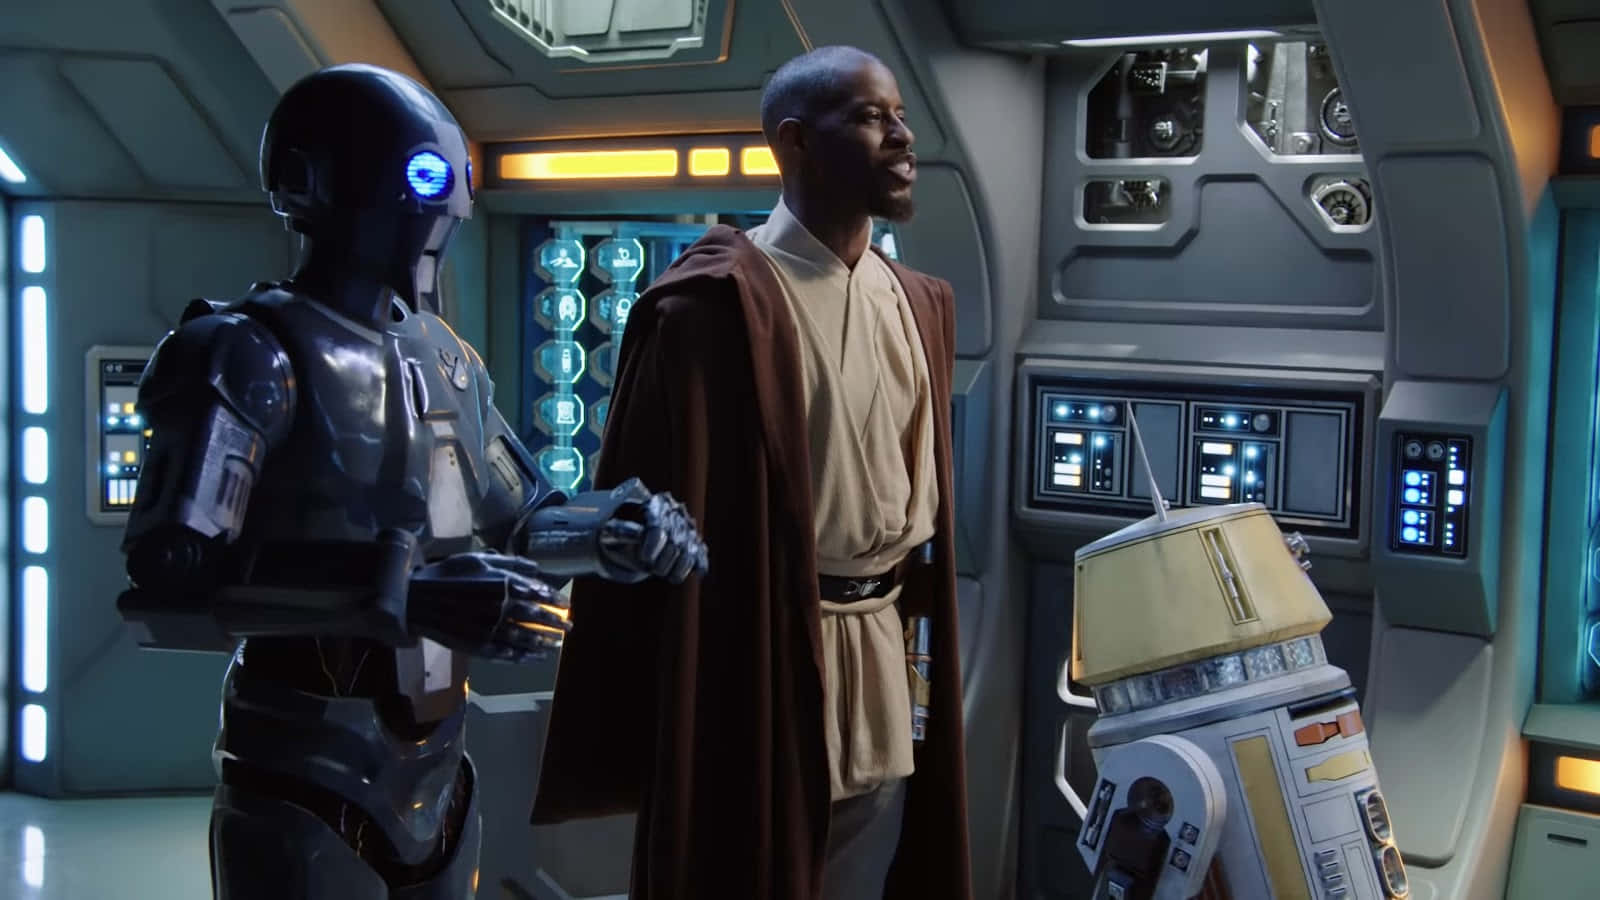 Jedi Council in deep discussion Wallpaper